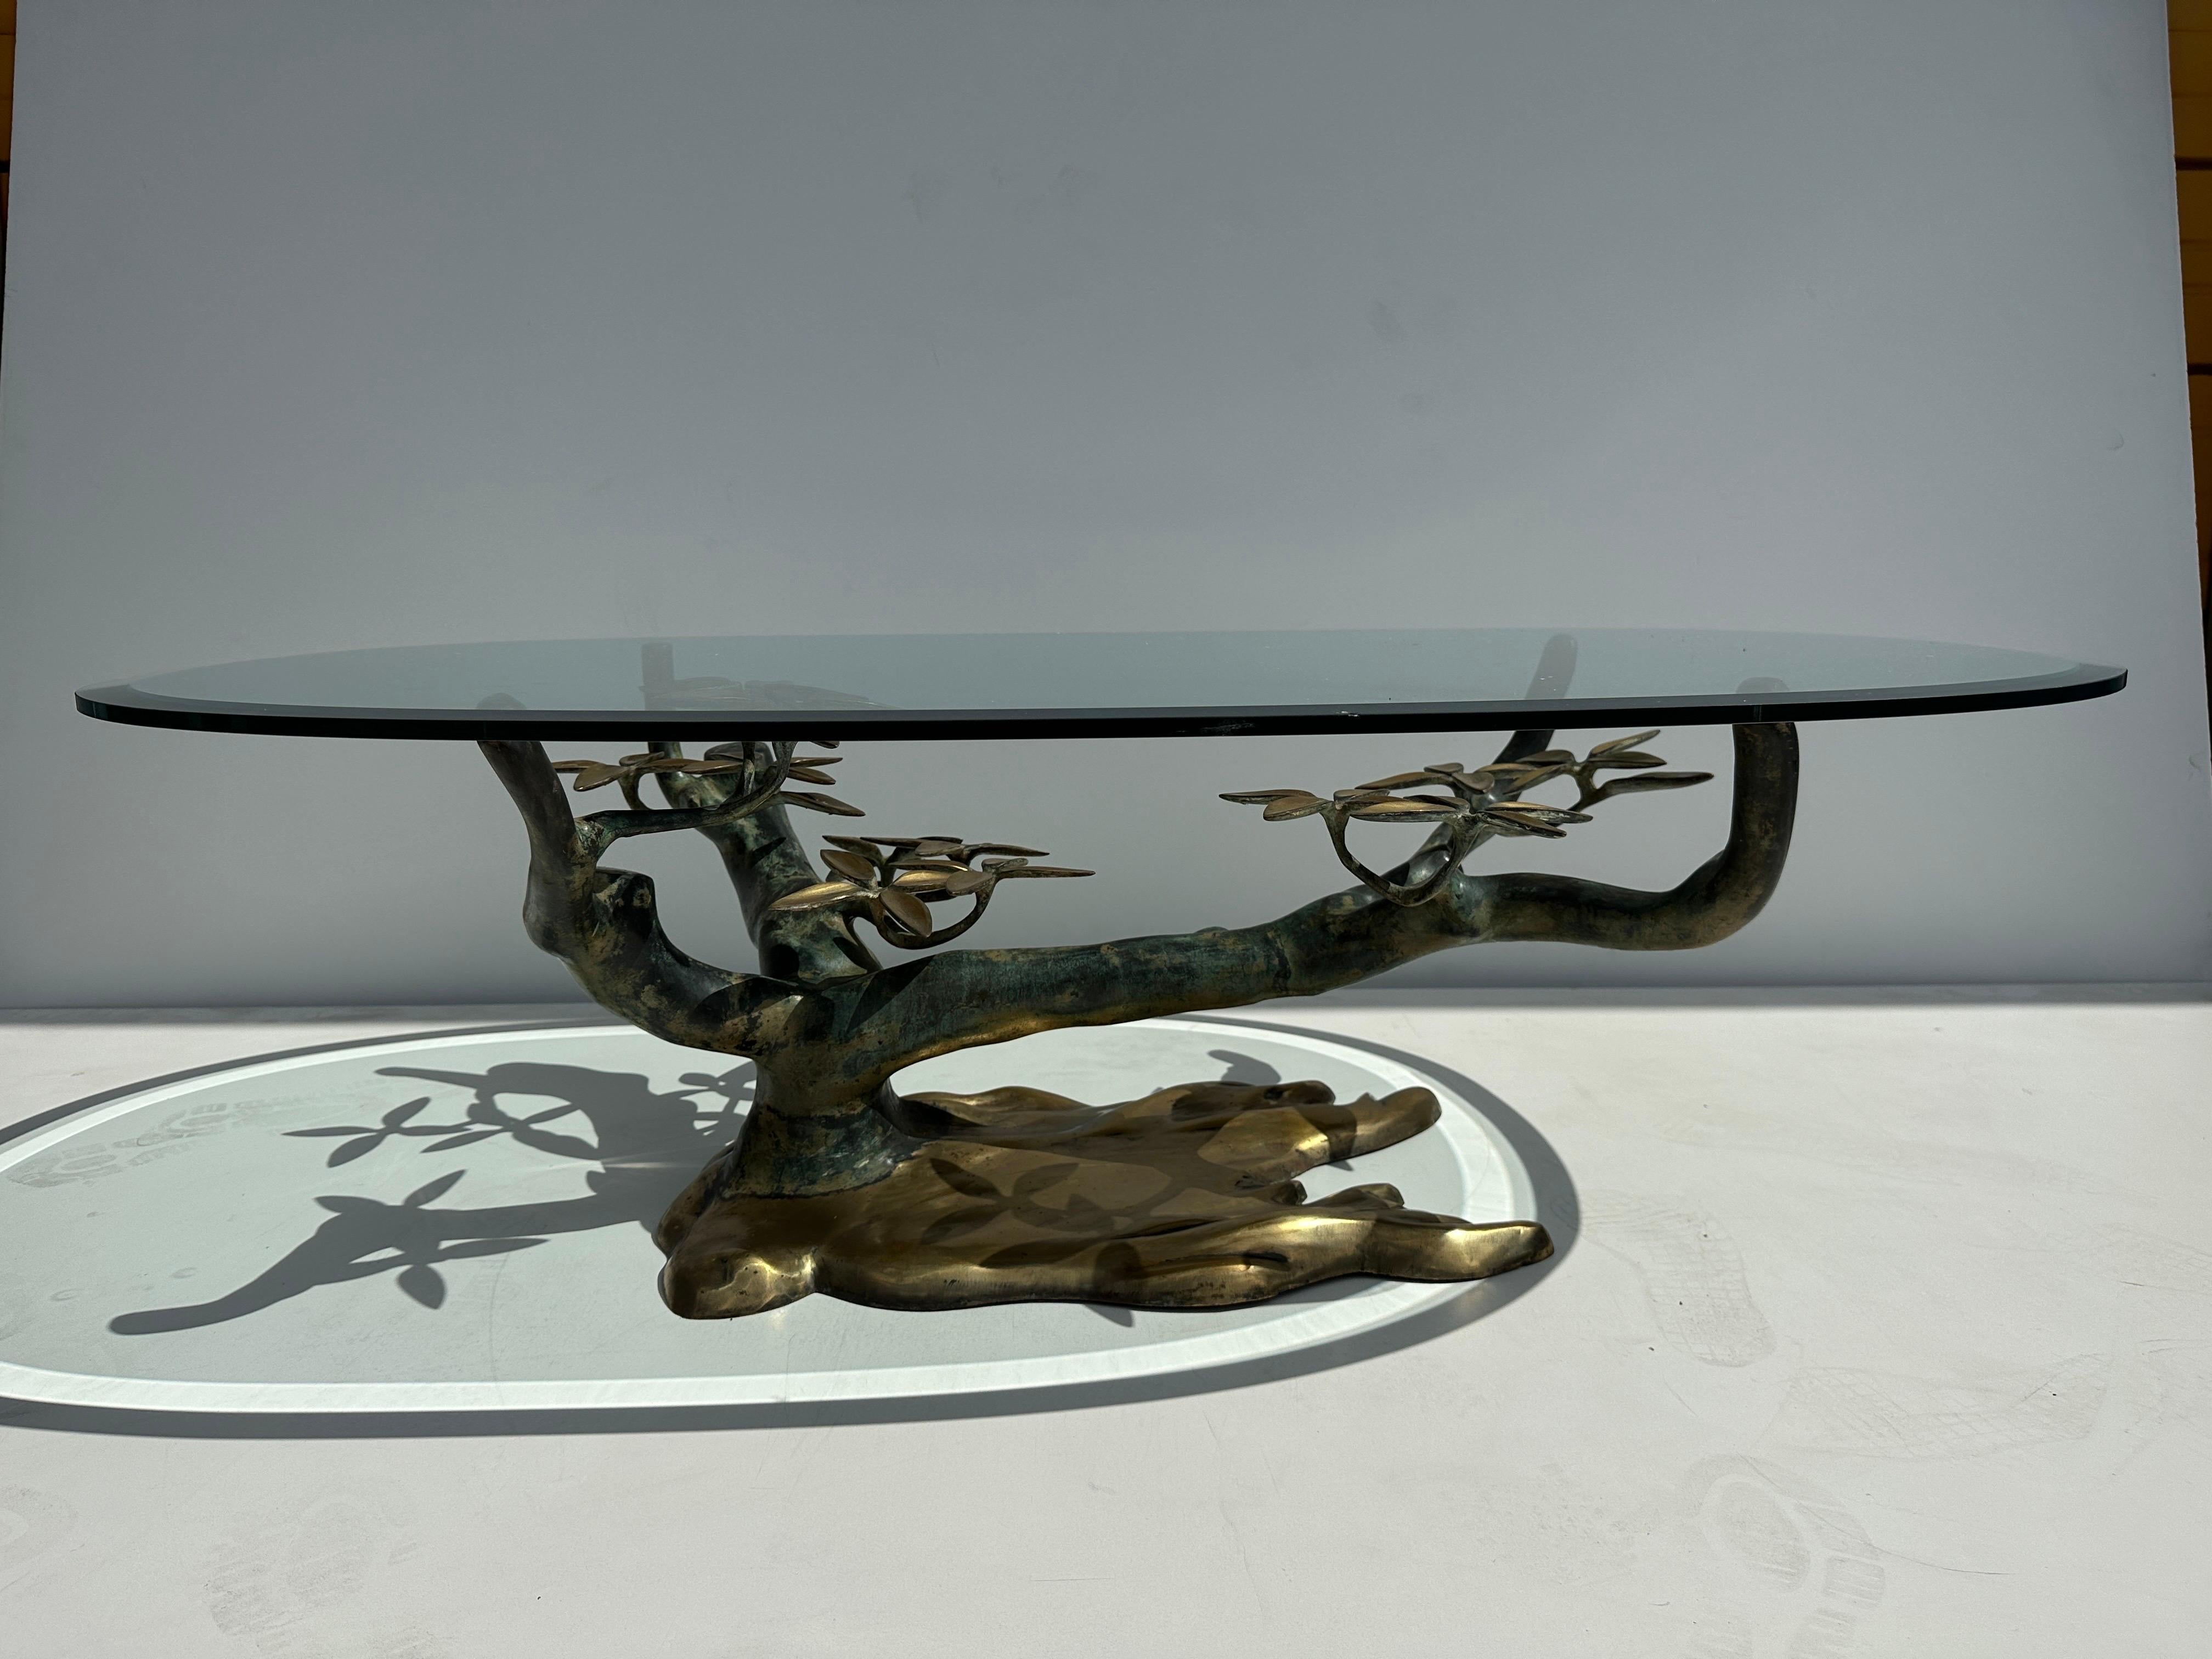 Table basse en forme de bonsaï en laiton de Daros, finition patinée deux tons. La base de l'arbre mesure 36